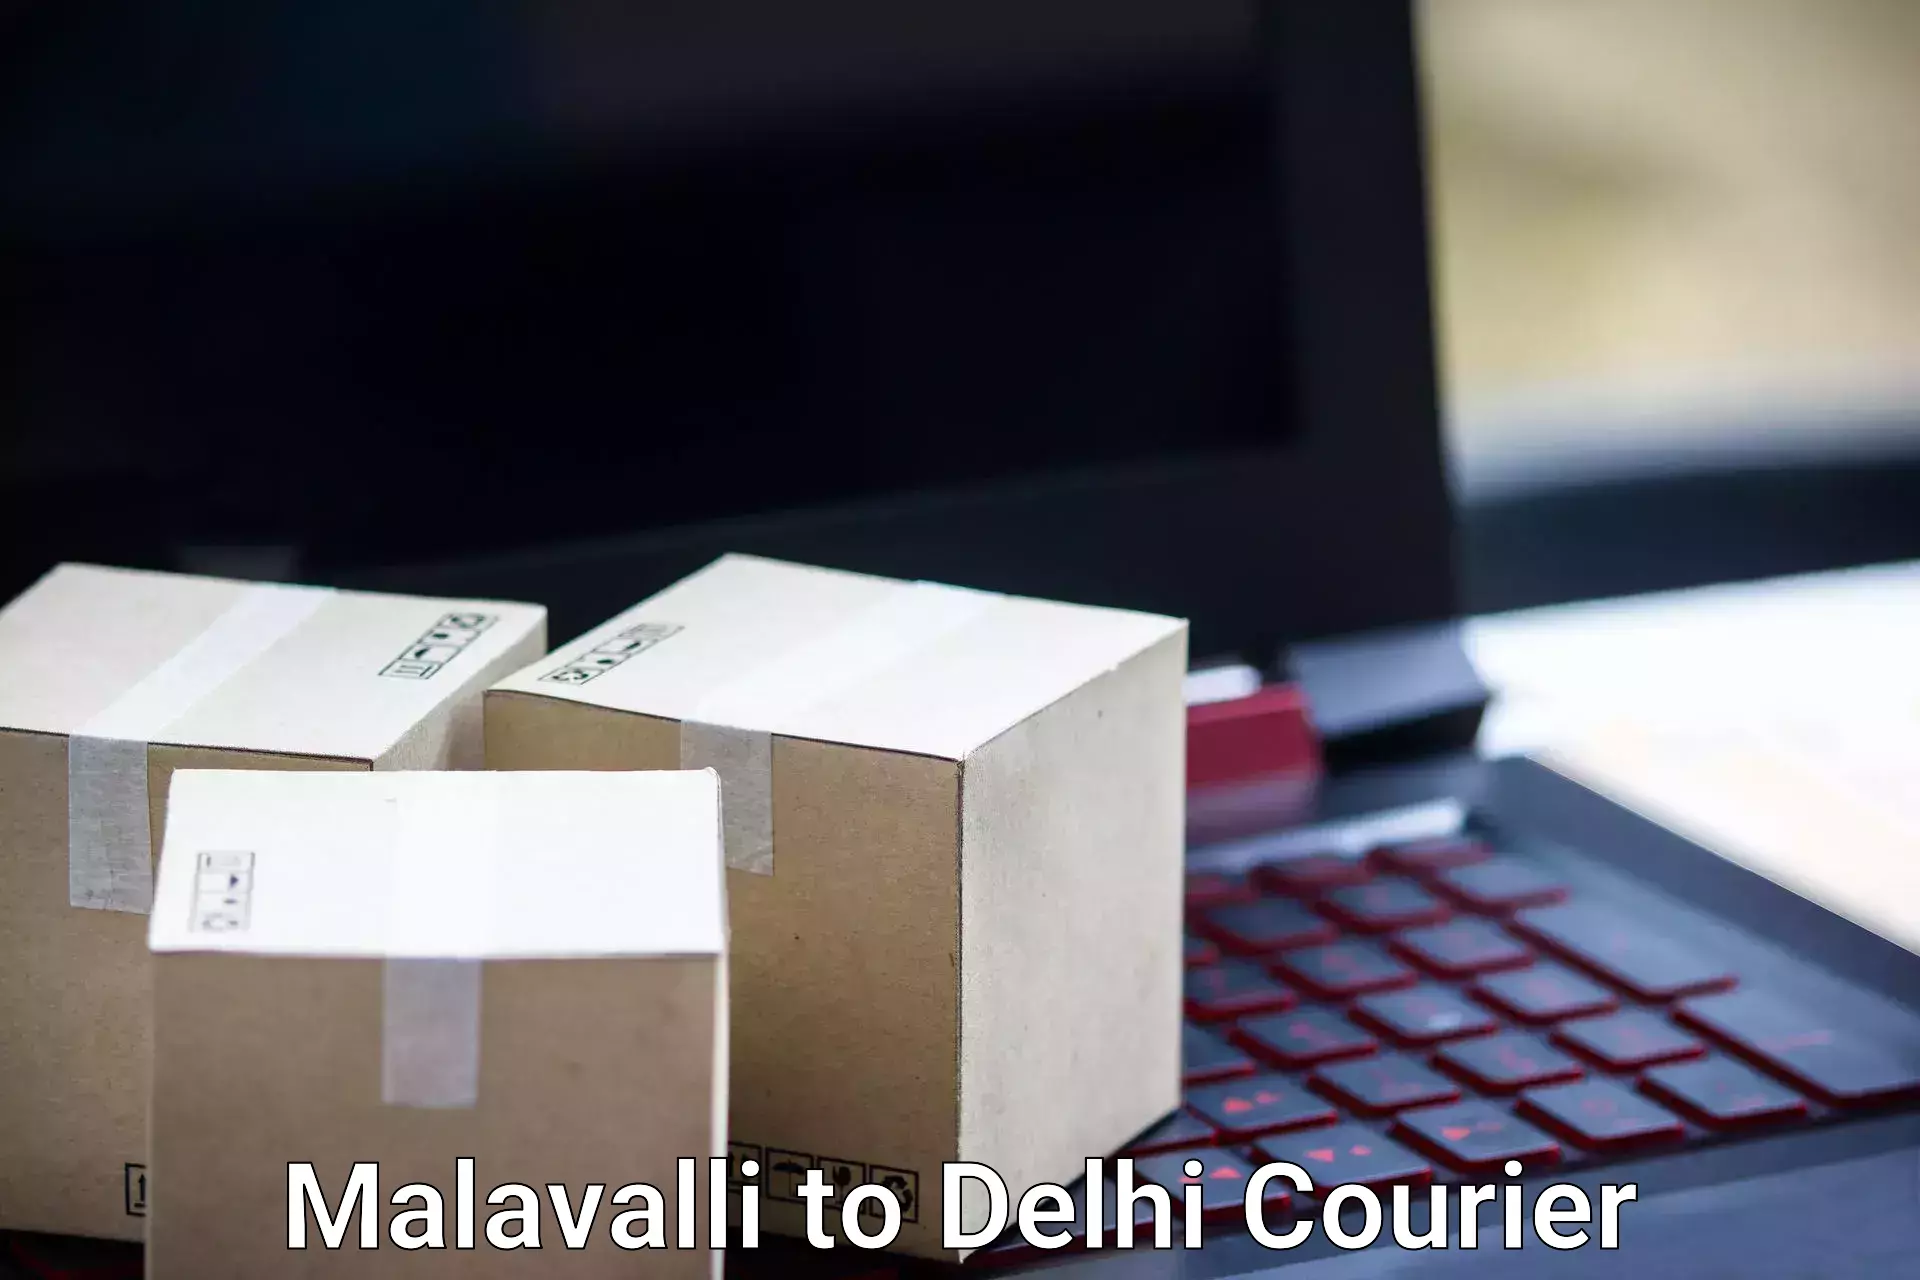 Baggage transport scheduler Malavalli to Delhi